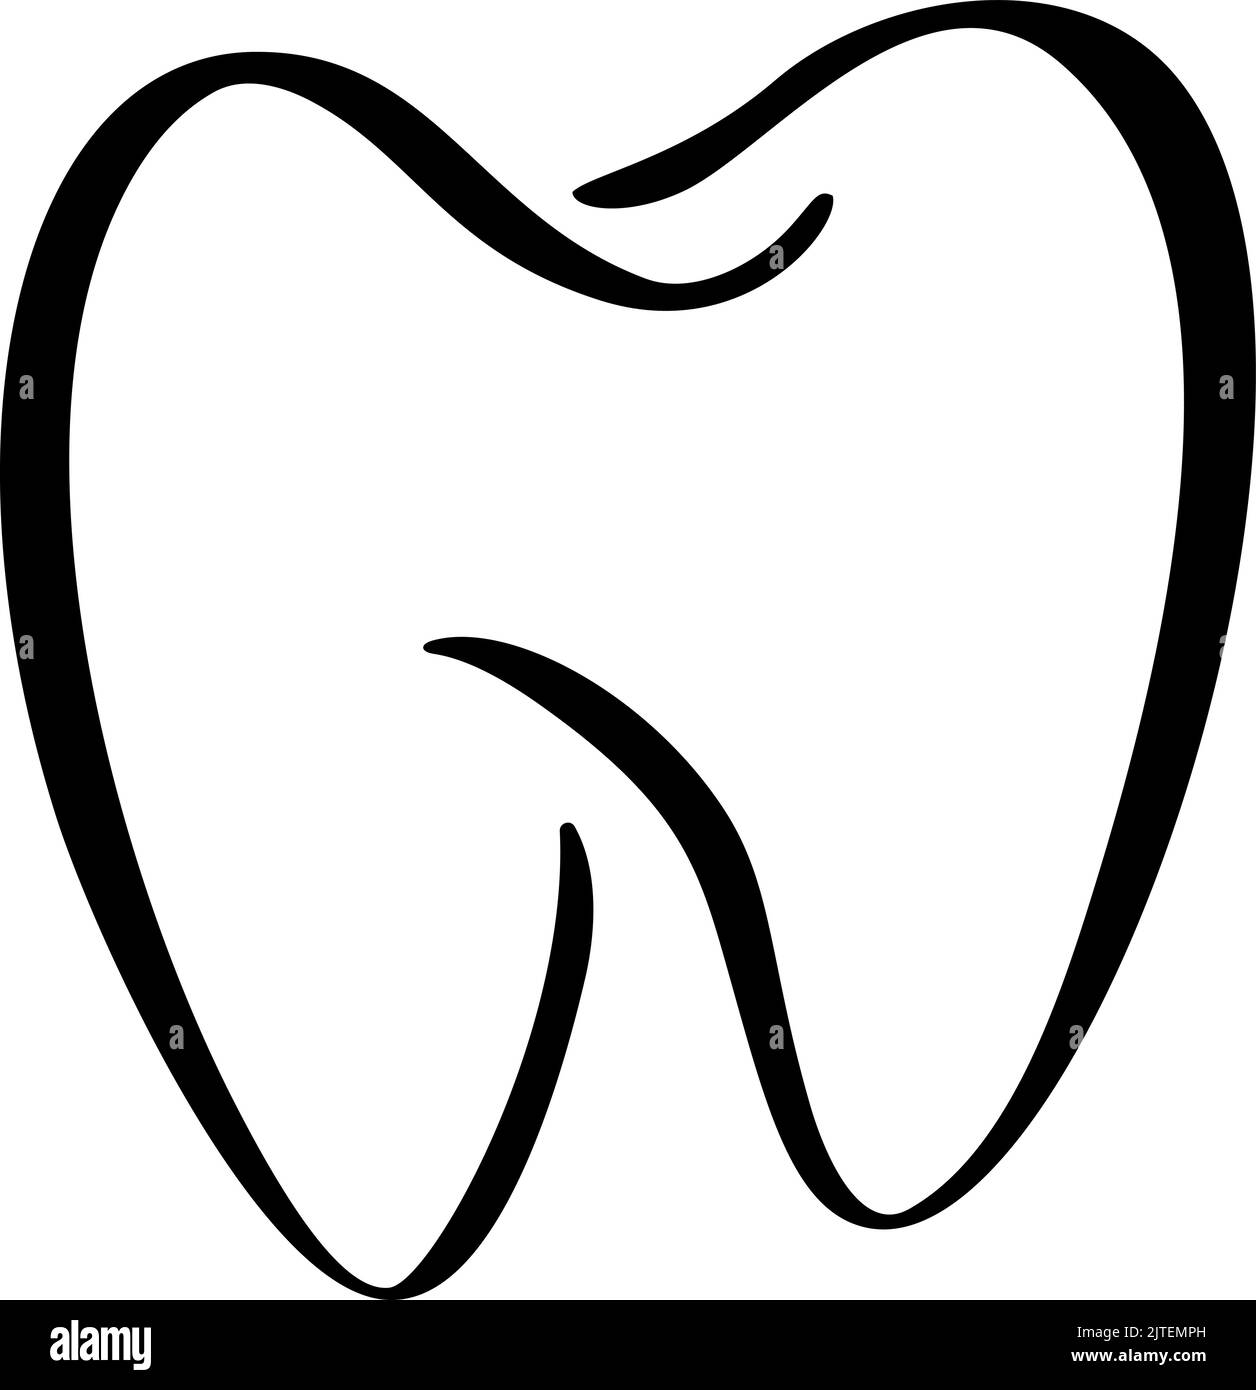 Icona del logo Tooth per il modello di disegno per la cura dentale di dentisti o stomatologia. Vettore isolato linea nera contorno simbolo dente per clinica odontoiatria o. Illustrazione Vettoriale